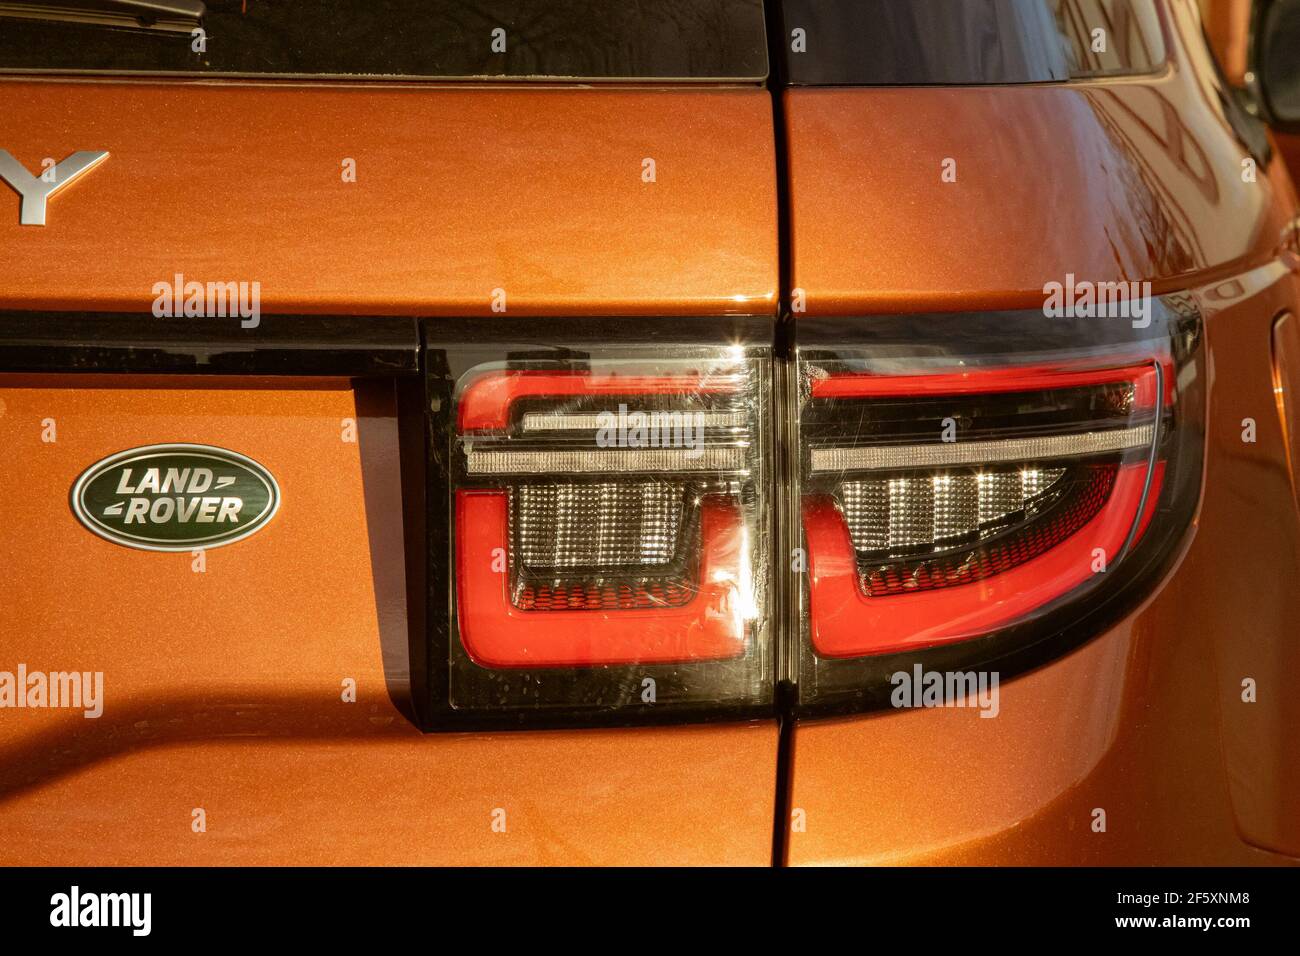 Moskau, Russland - 20. Dezember 2019:Rückansicht und Nahaufnahme der Kofferraumtür und Rückleuchten des neuen Land Rover Discovery Sport 2020. Orange Allradantrieb Auto in der Straße geparkt. Stockfoto